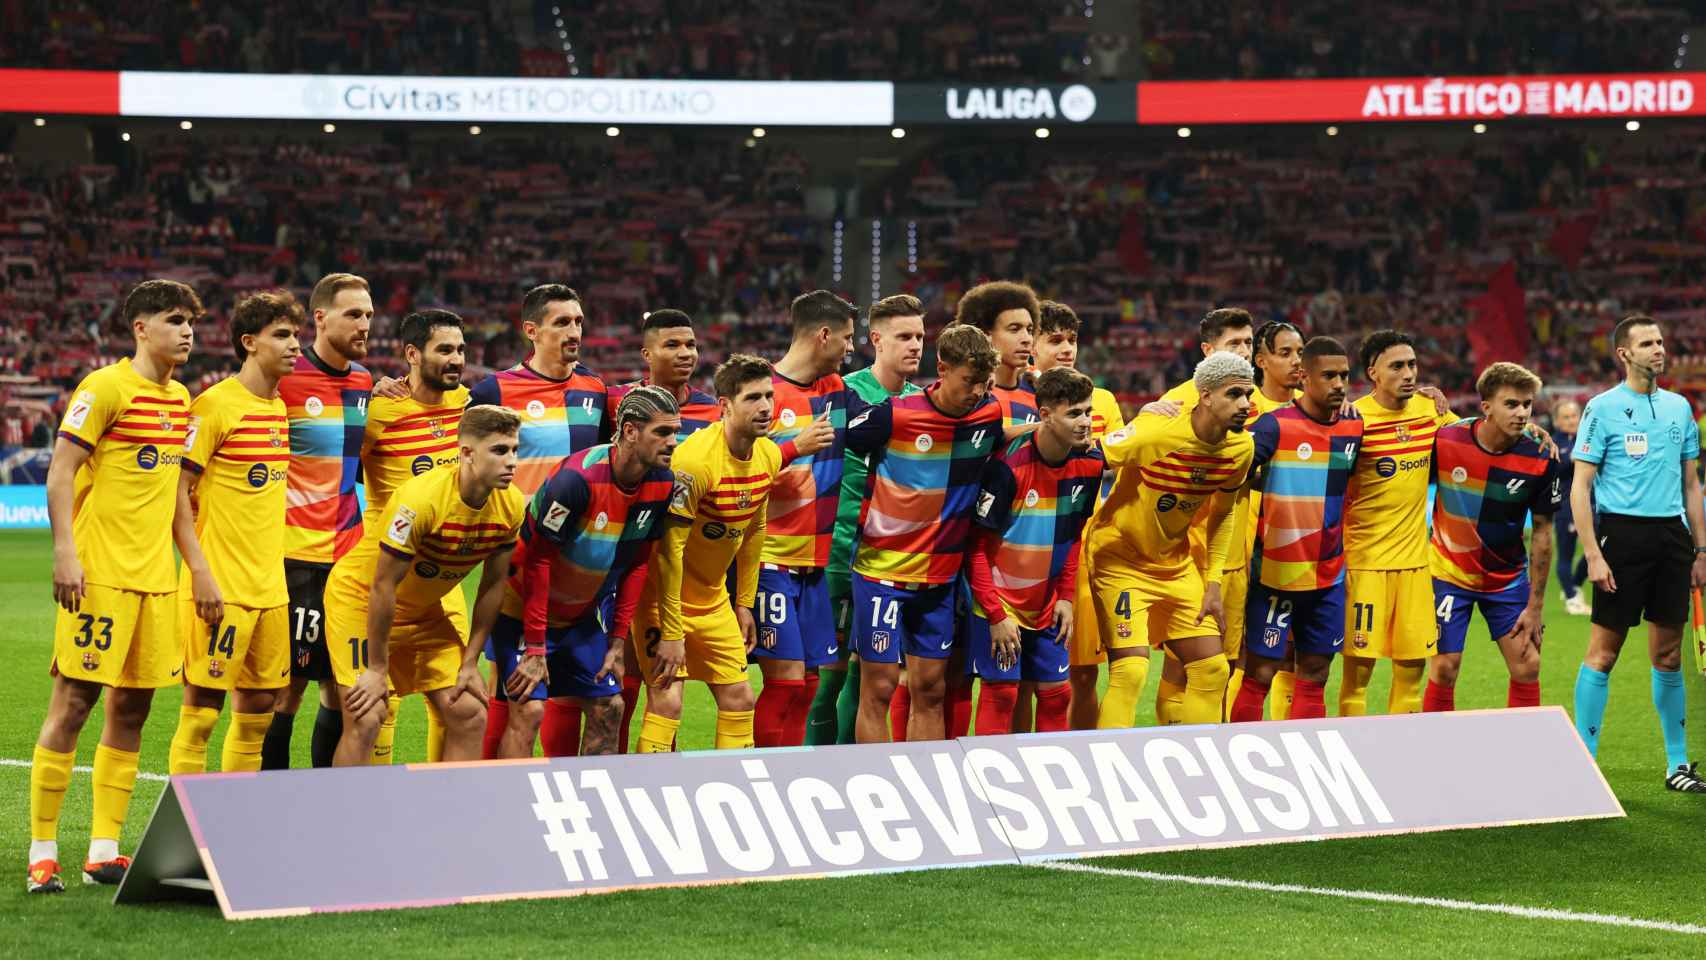 Los jugadores del FC Barcelona sí se unieron a la foto de familia junto con los jugadores del Atleti y el lema de campaña 1 Voice Vs Racism